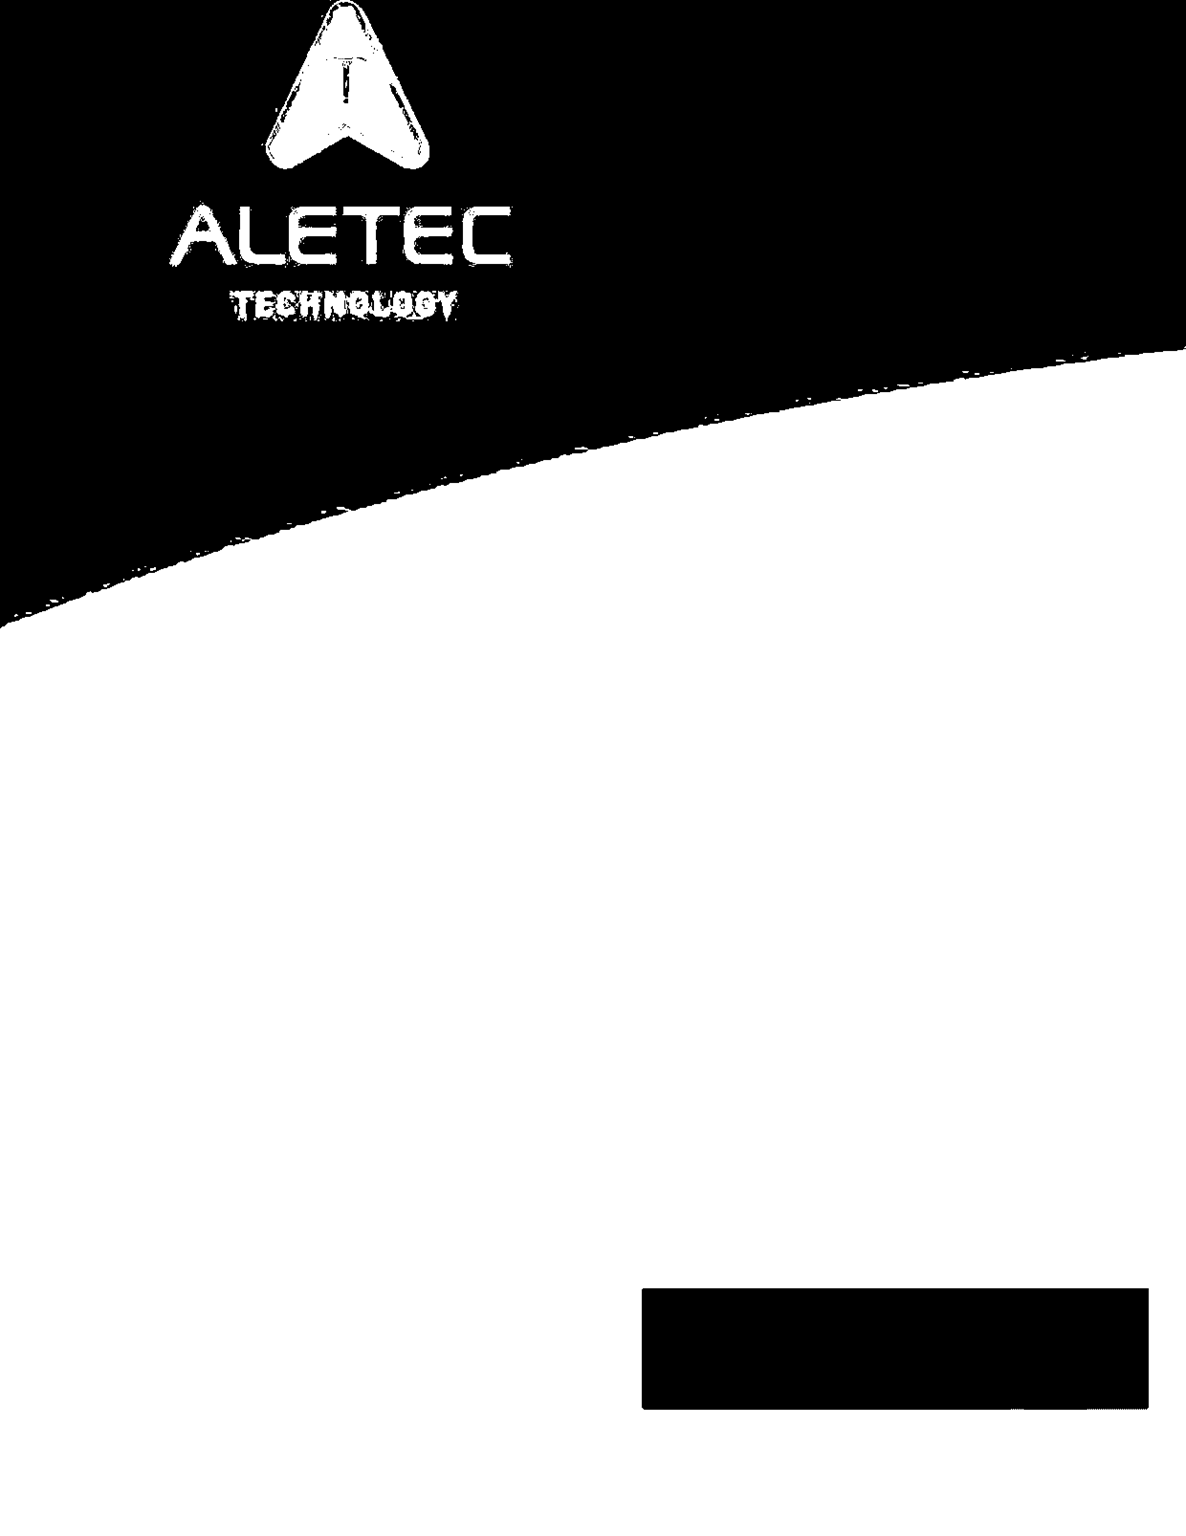 prezzi riparazione 2015 RISERVATO PER CONVENZIONE Valido dal 20/05/2015 ALETEC SRL Sede operativa Via degli Olmetti 18 00060 - Formello (Roma) Telefono e Fax 06